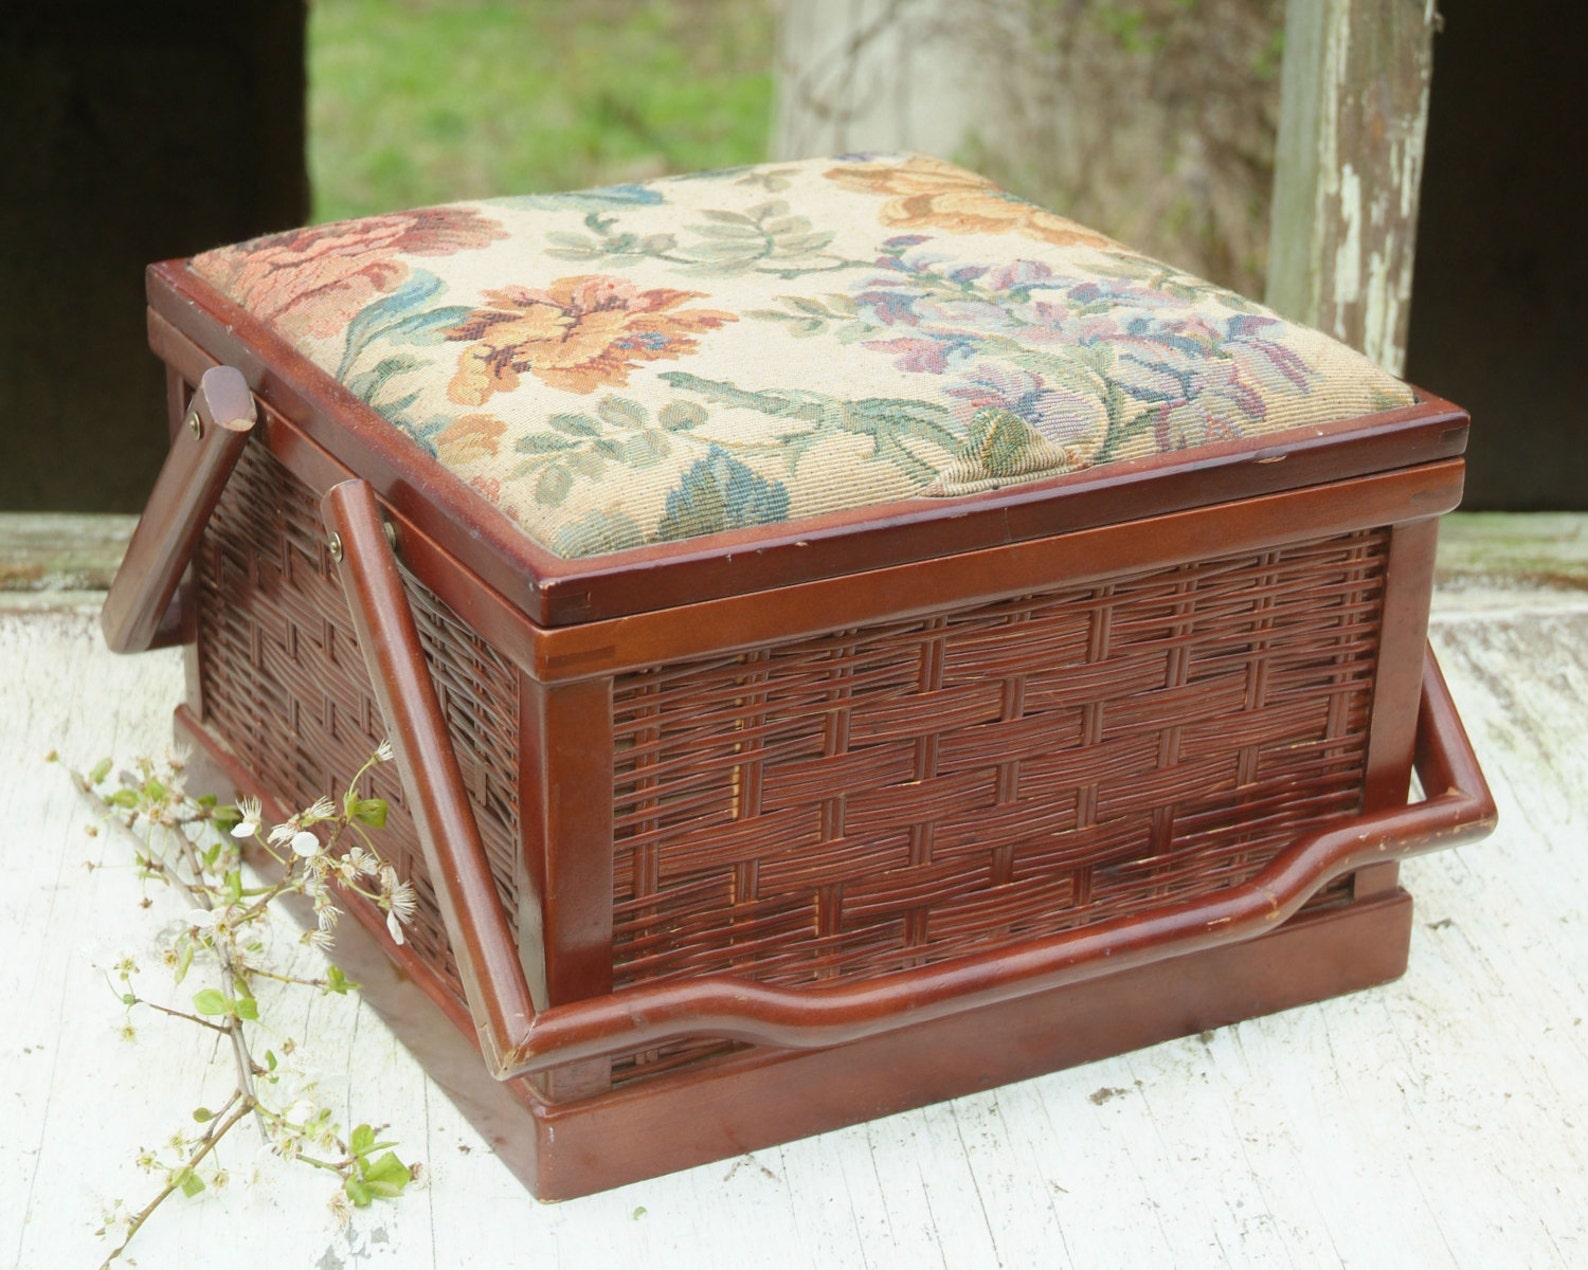 Vintage Wood Sewing Basket Handles Wicker Basket with Lid | Etsy